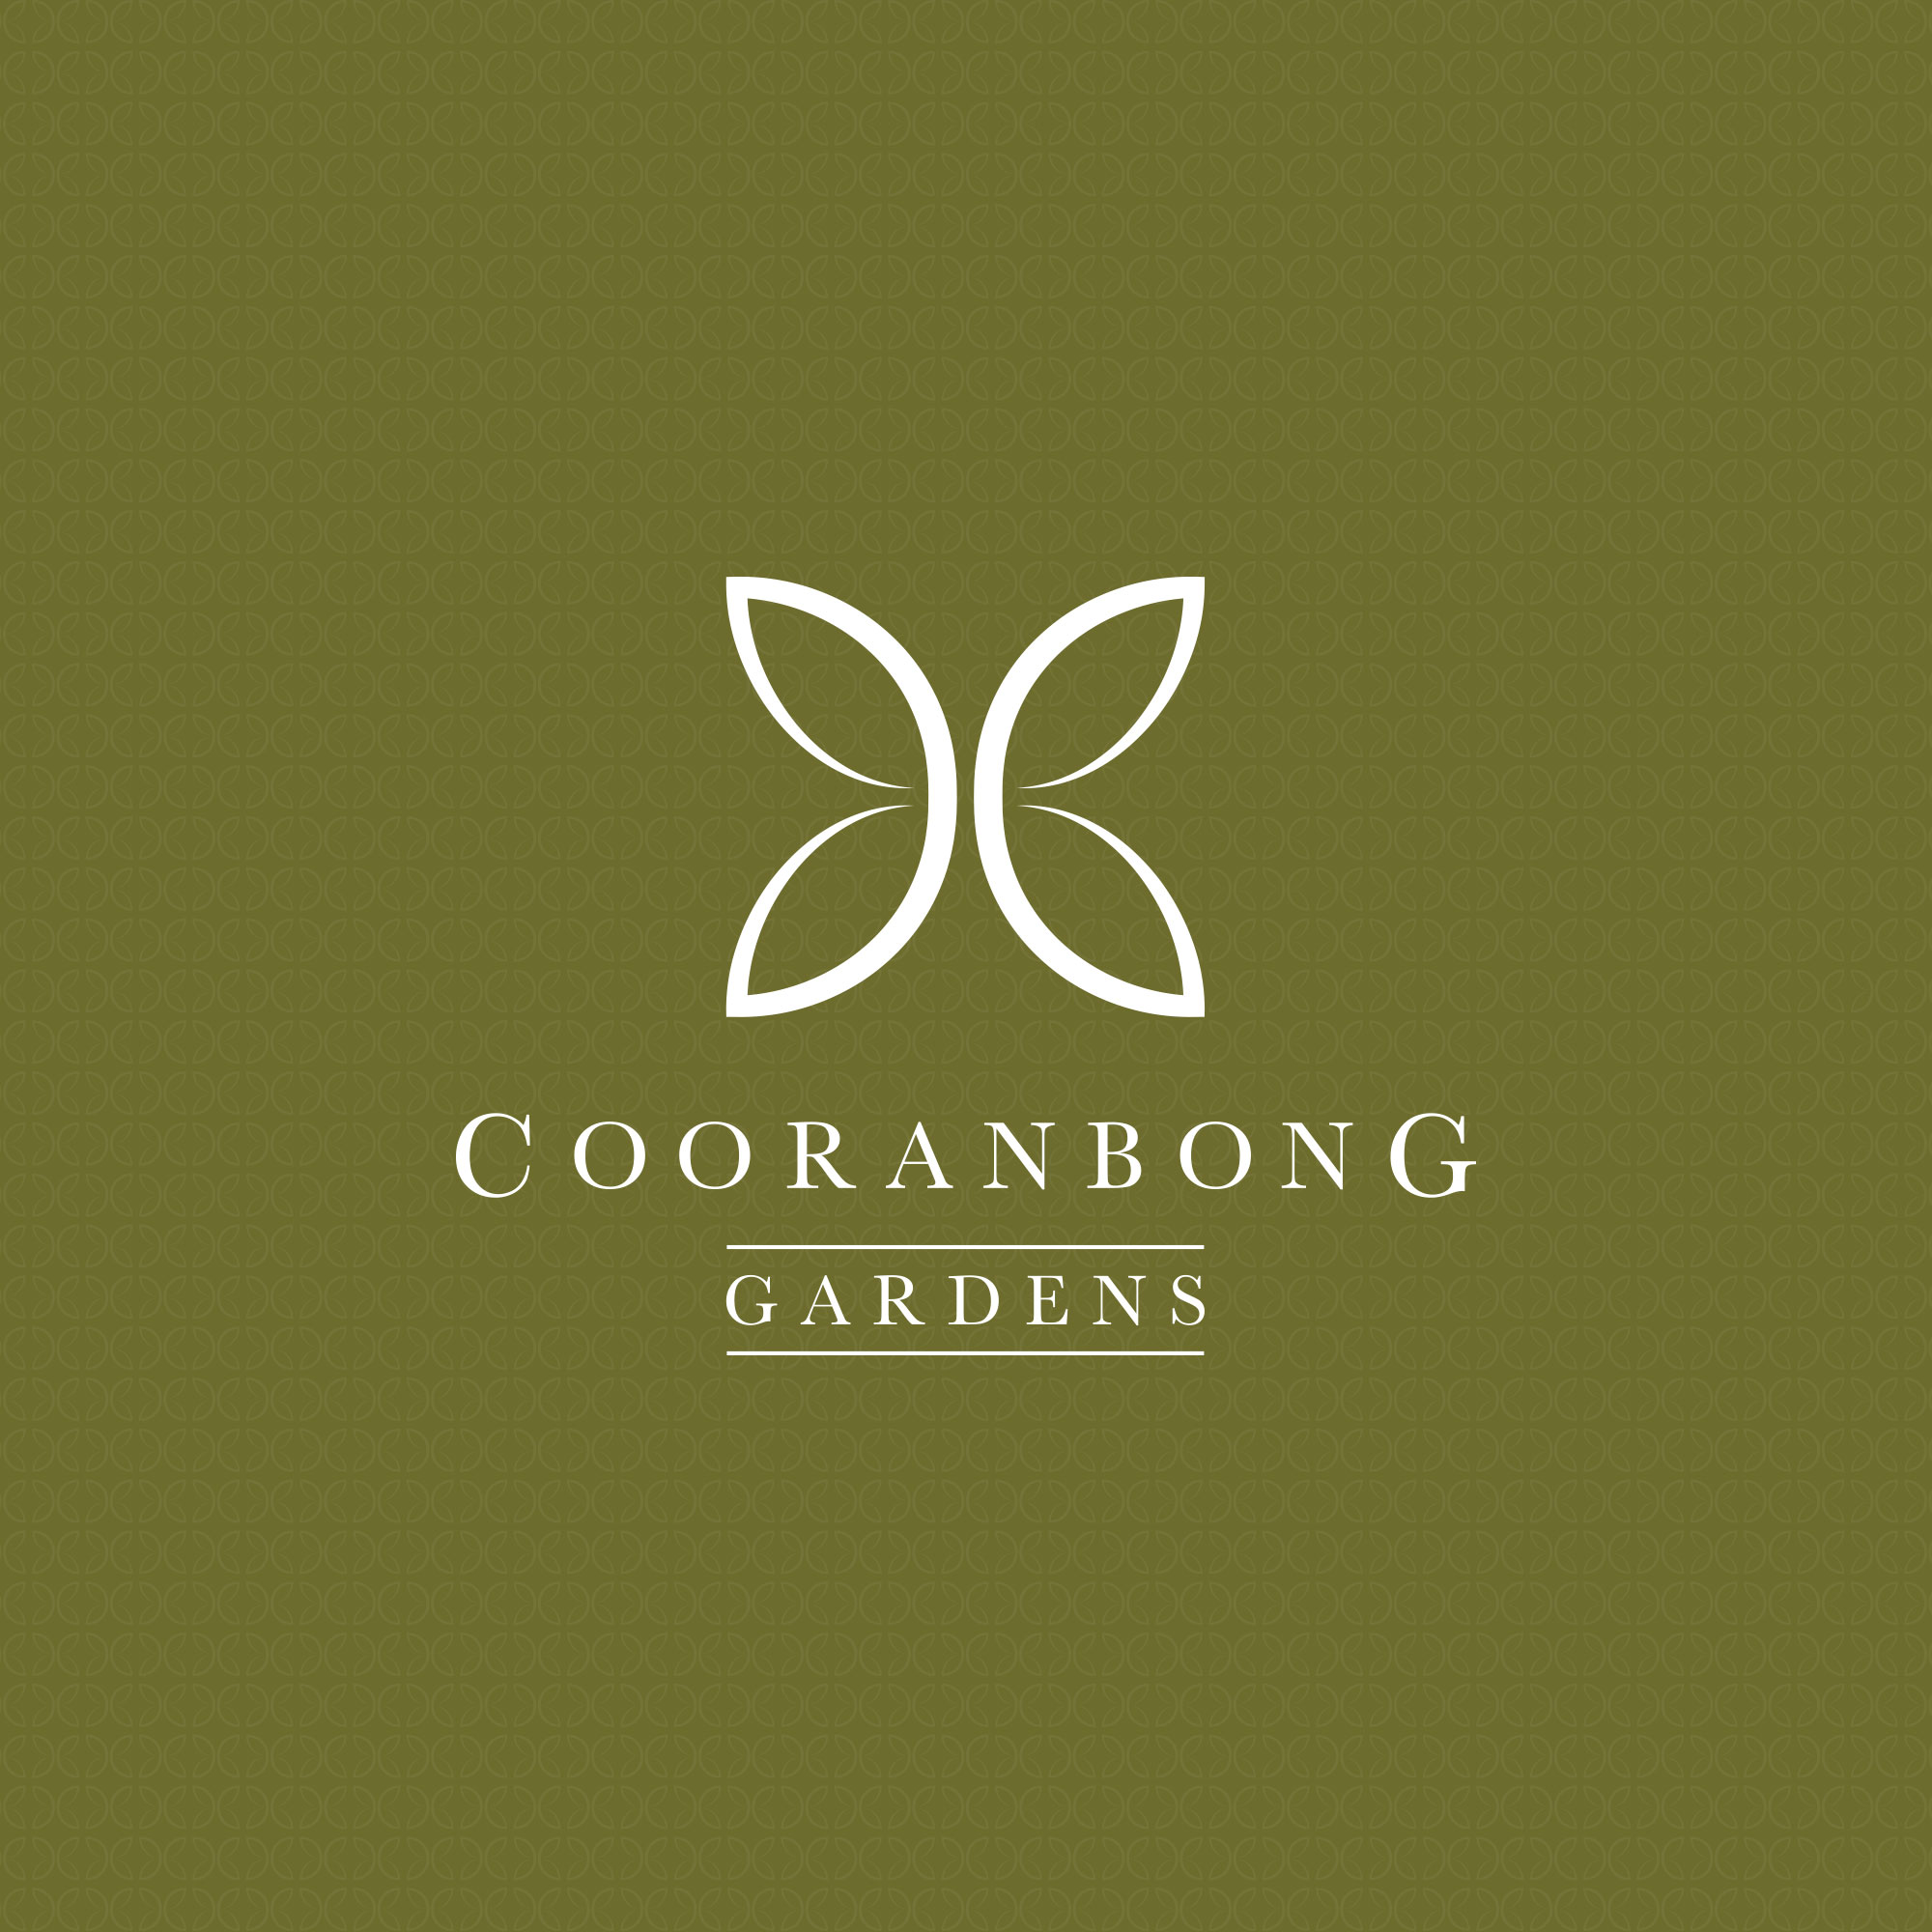 Cooranbong Gardens